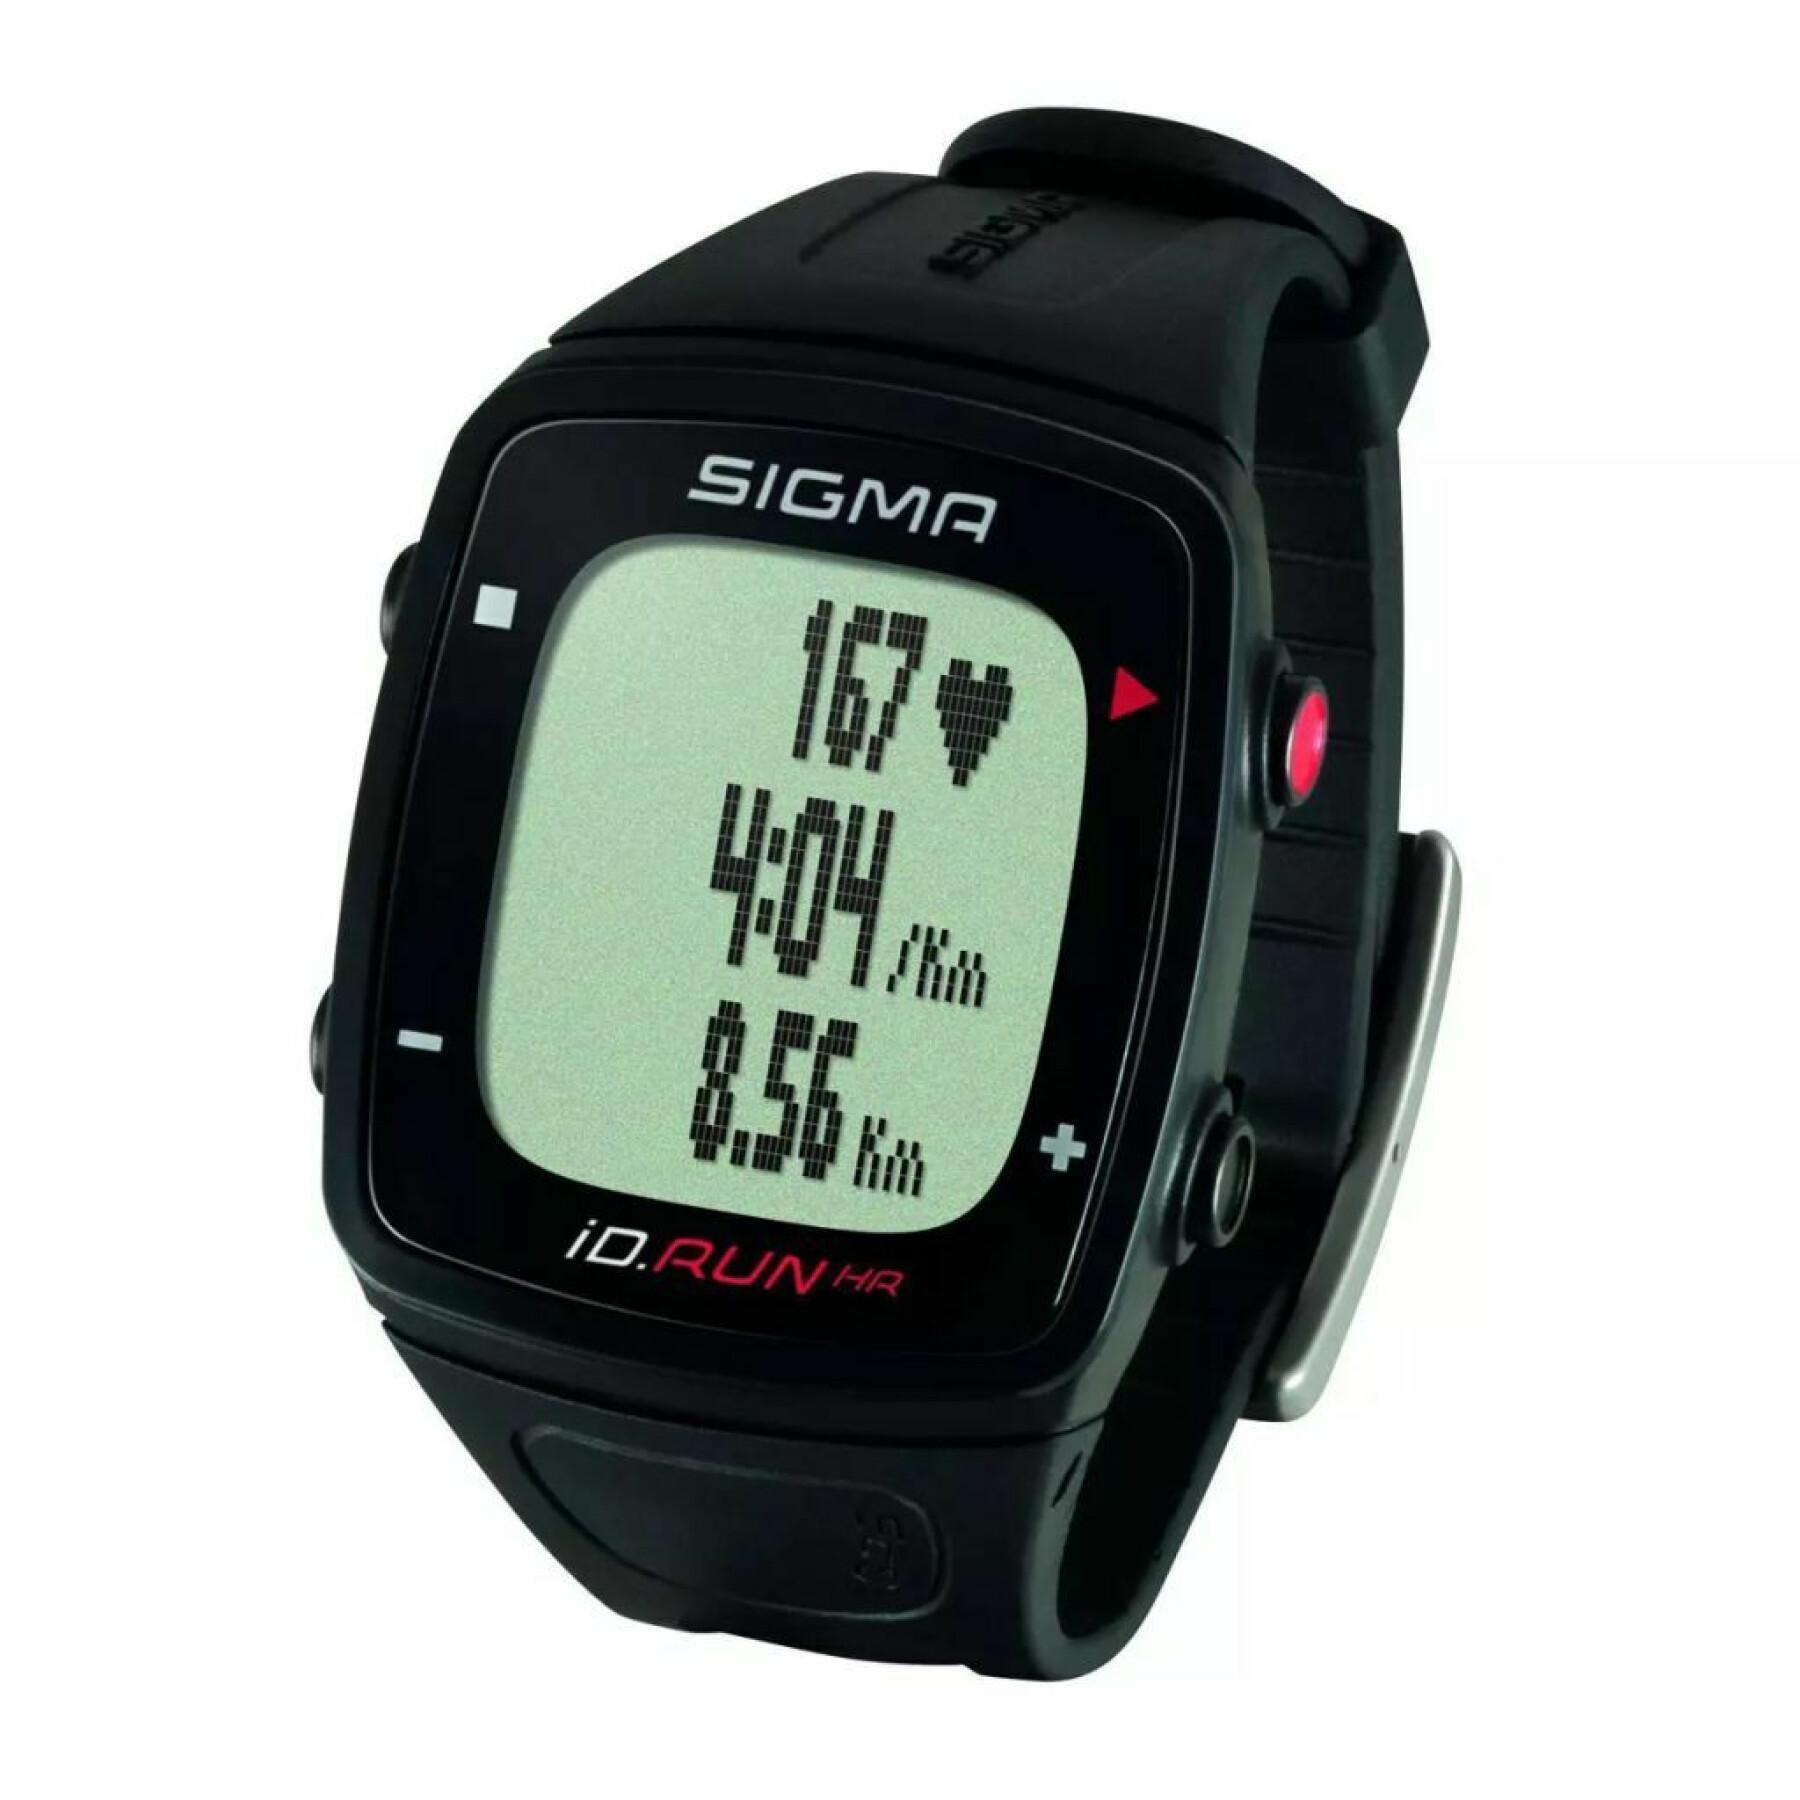 Orologio cardio con 10 funzioni, tra cui distanza e velocità gps Sigma iD.Run HR